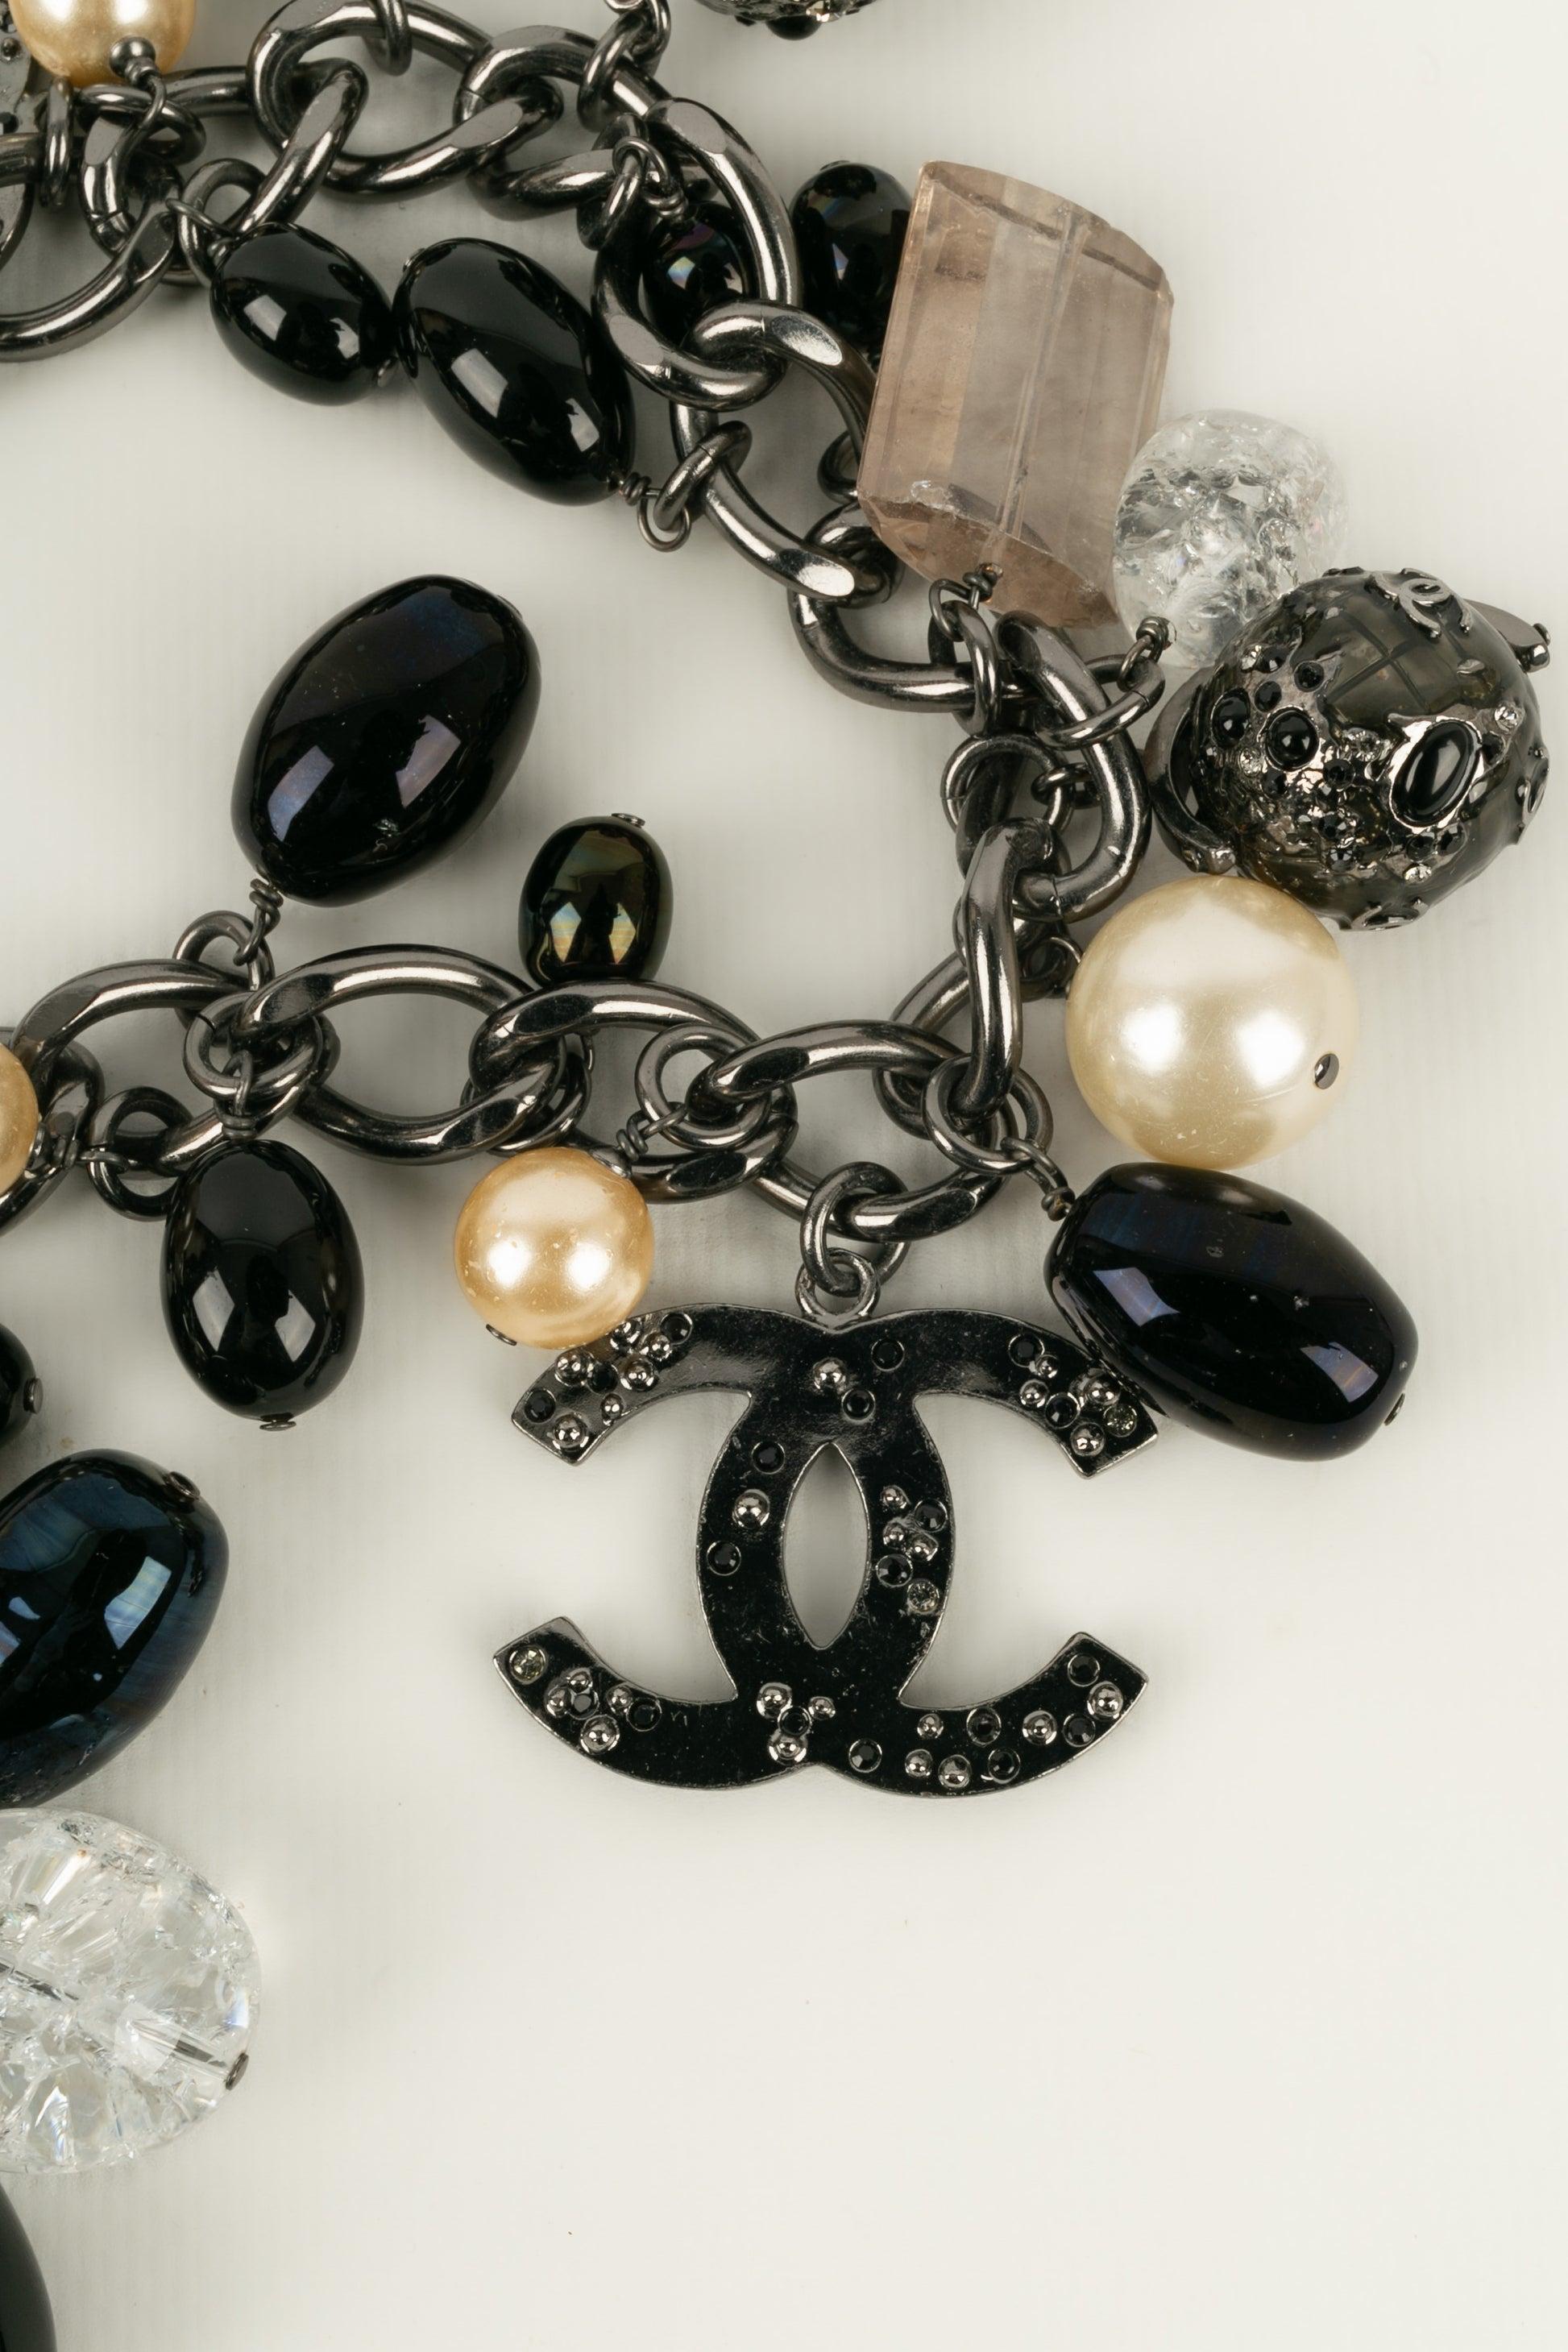 Chanel (Made in France) Impressionnant collier en métal argenté foncé Collection World Map dans les tons noirs et nacrés. Collectional automne-hiver 2004. A noter, parfois les perles nacrées du costume sont portées.

Informations supplémentaires